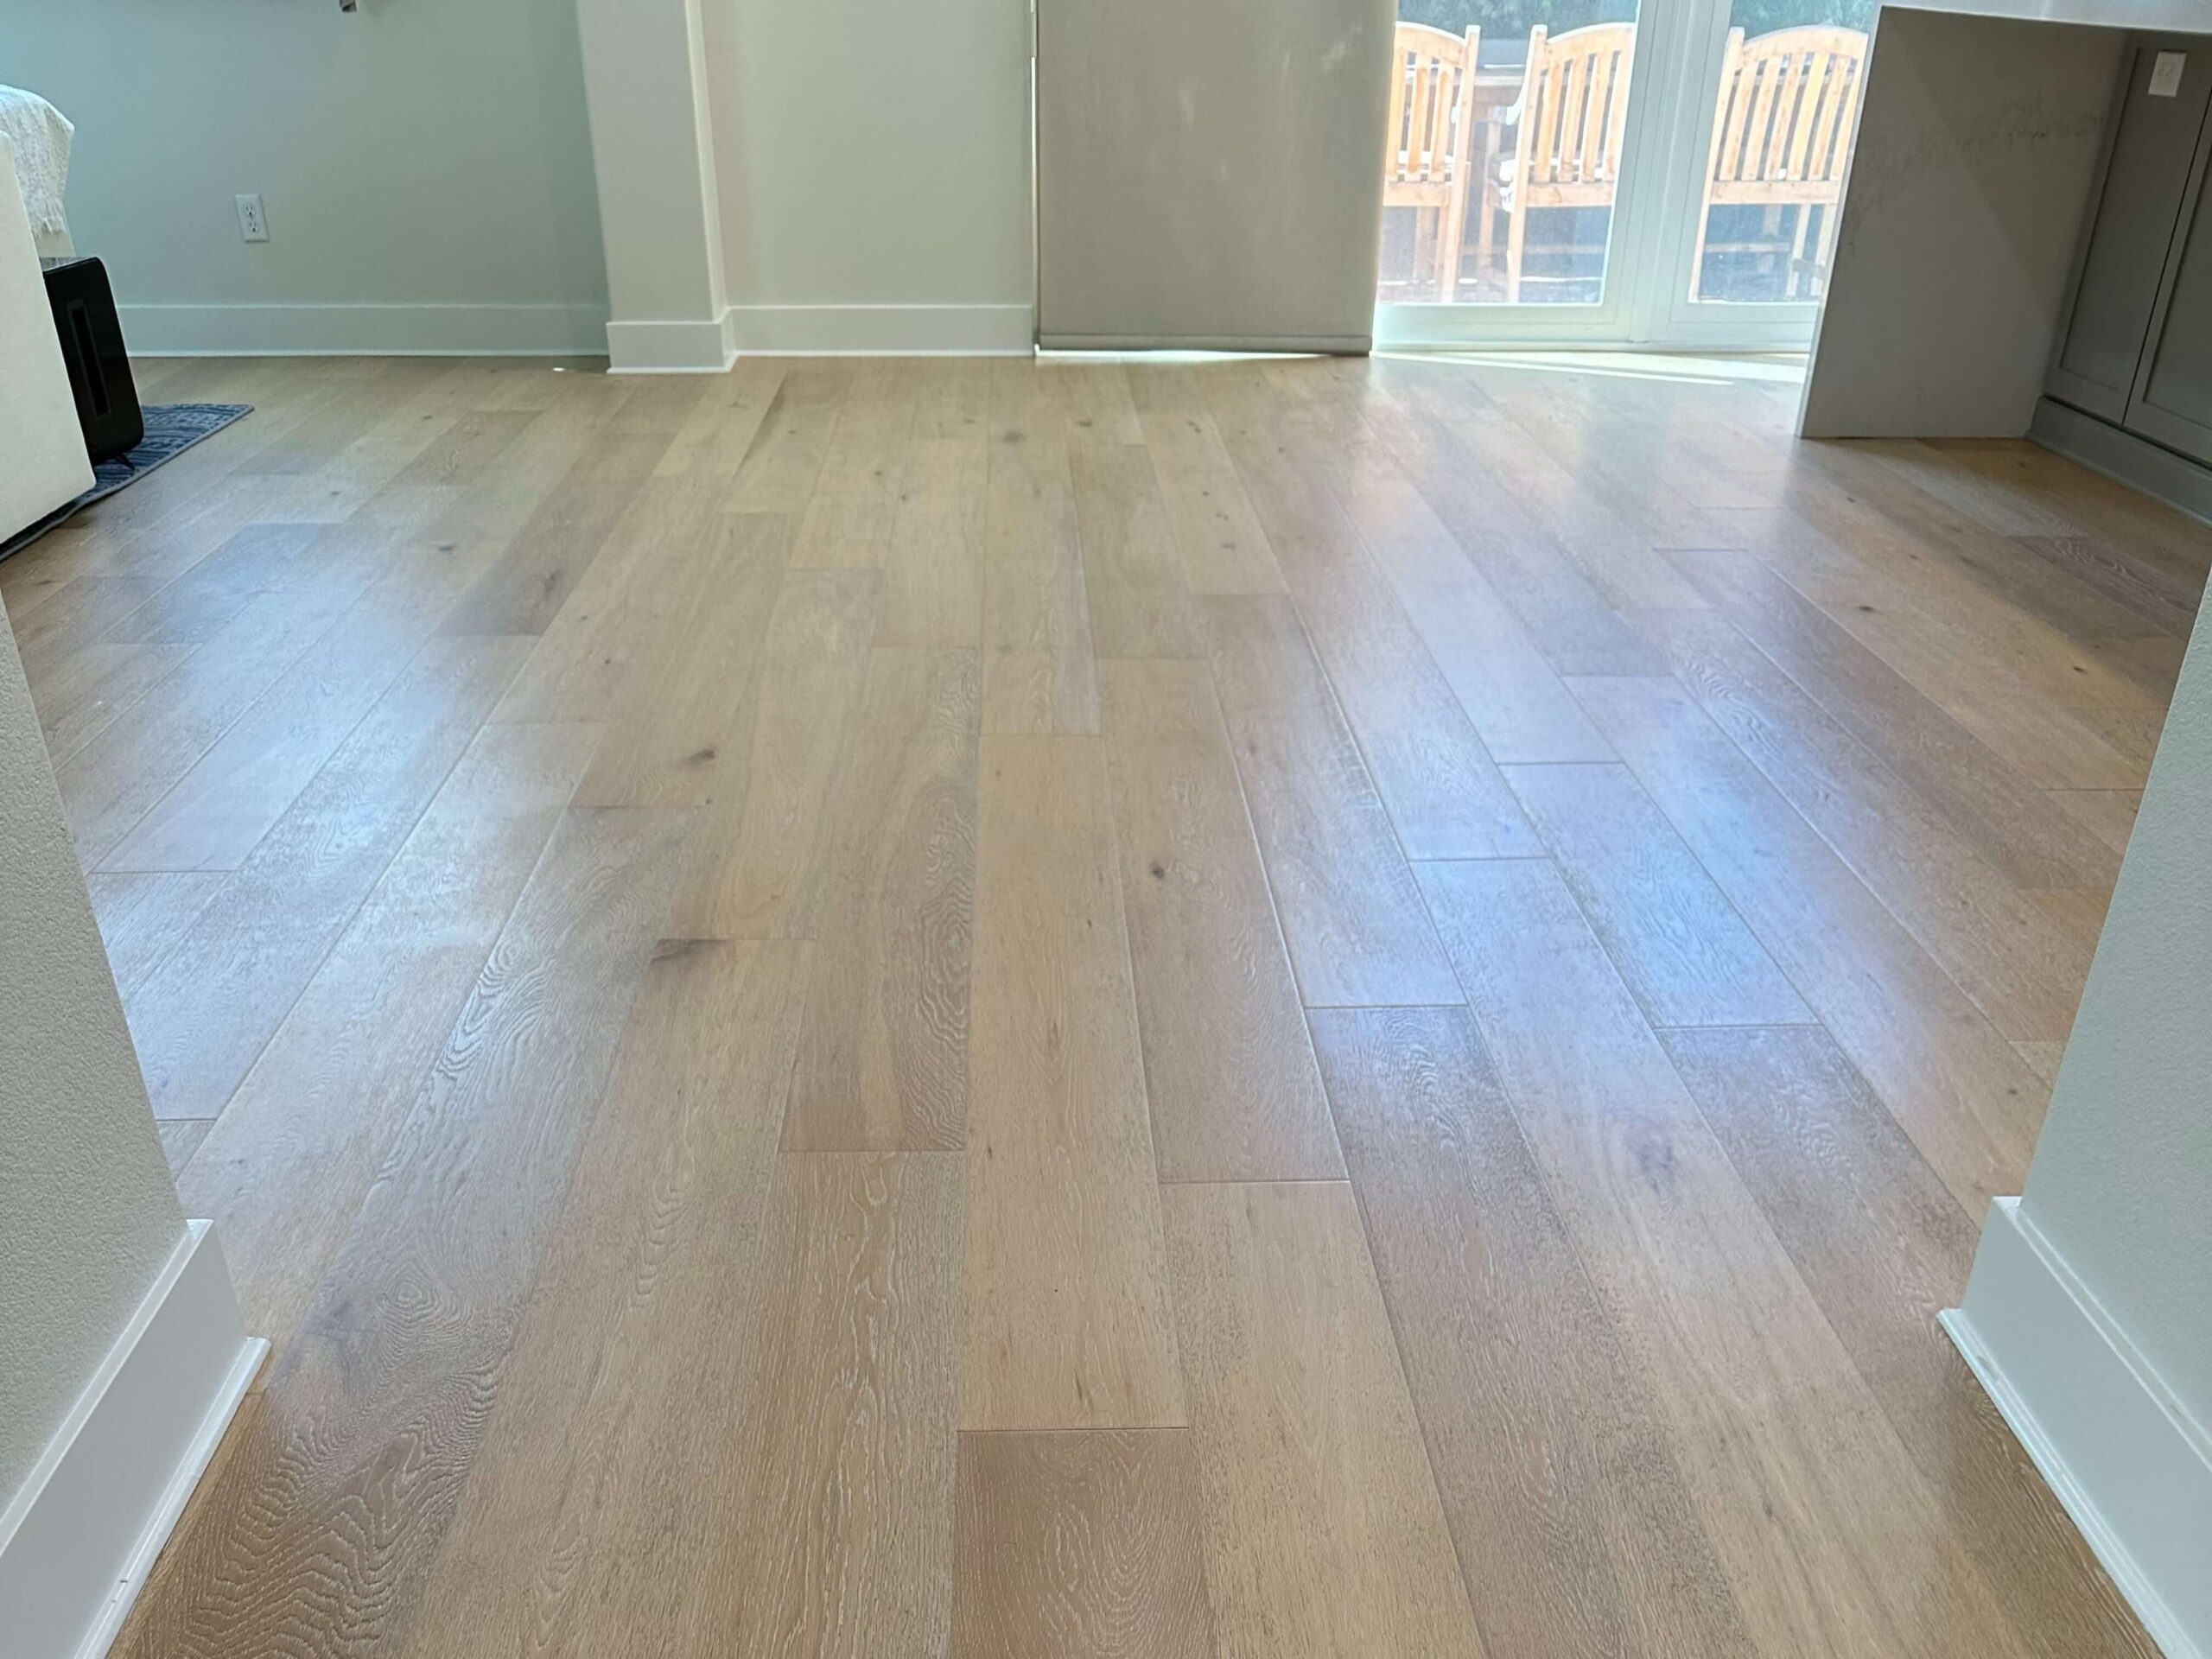 Clean hardwood floor